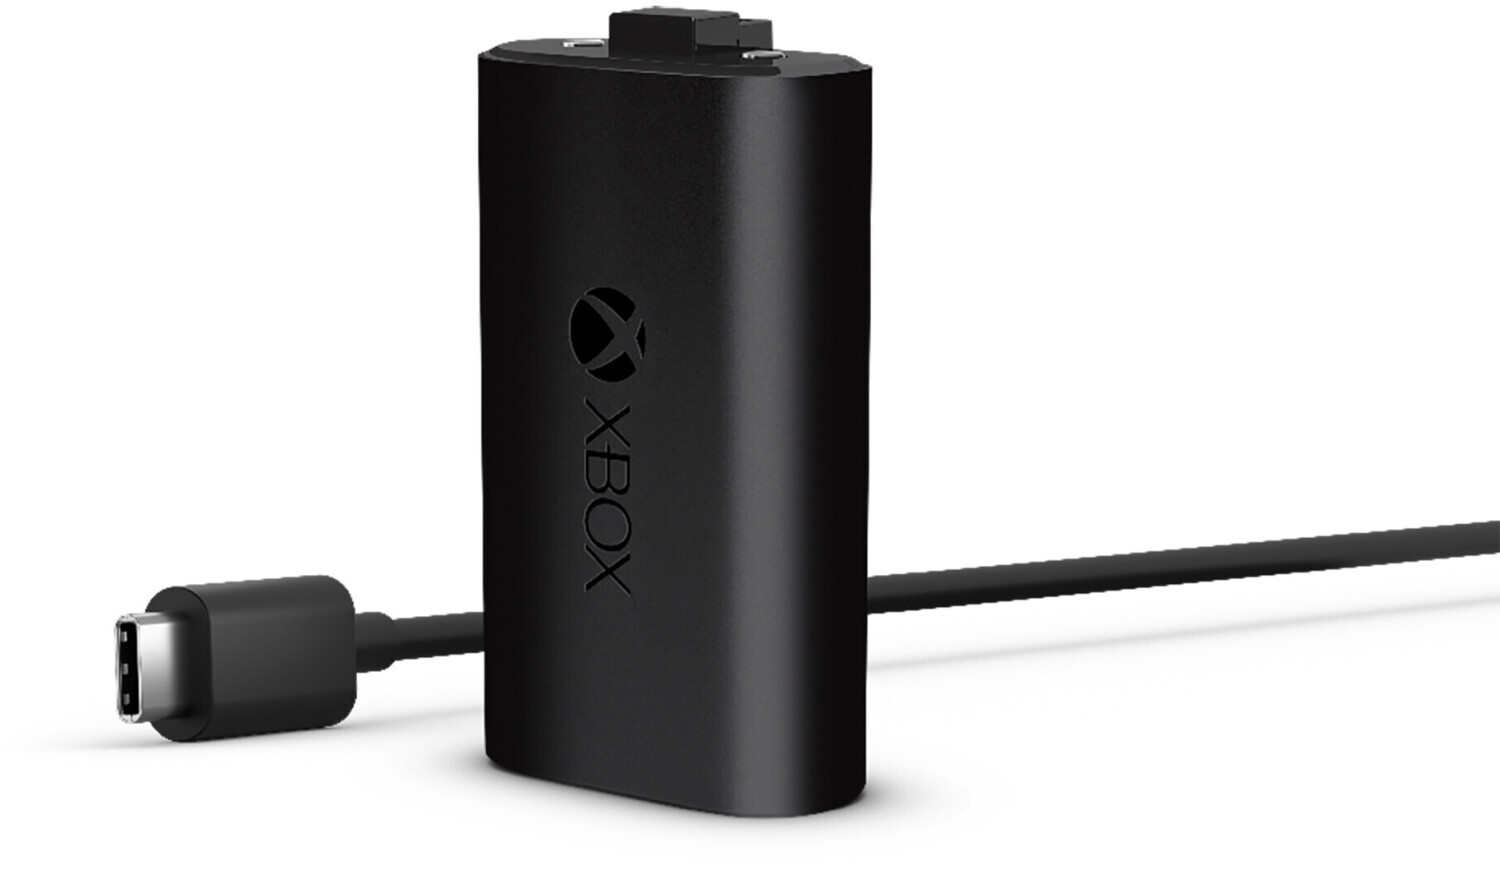 Microsoft Mando Inalámbrico Xbox One Con Cable USB-C Negro